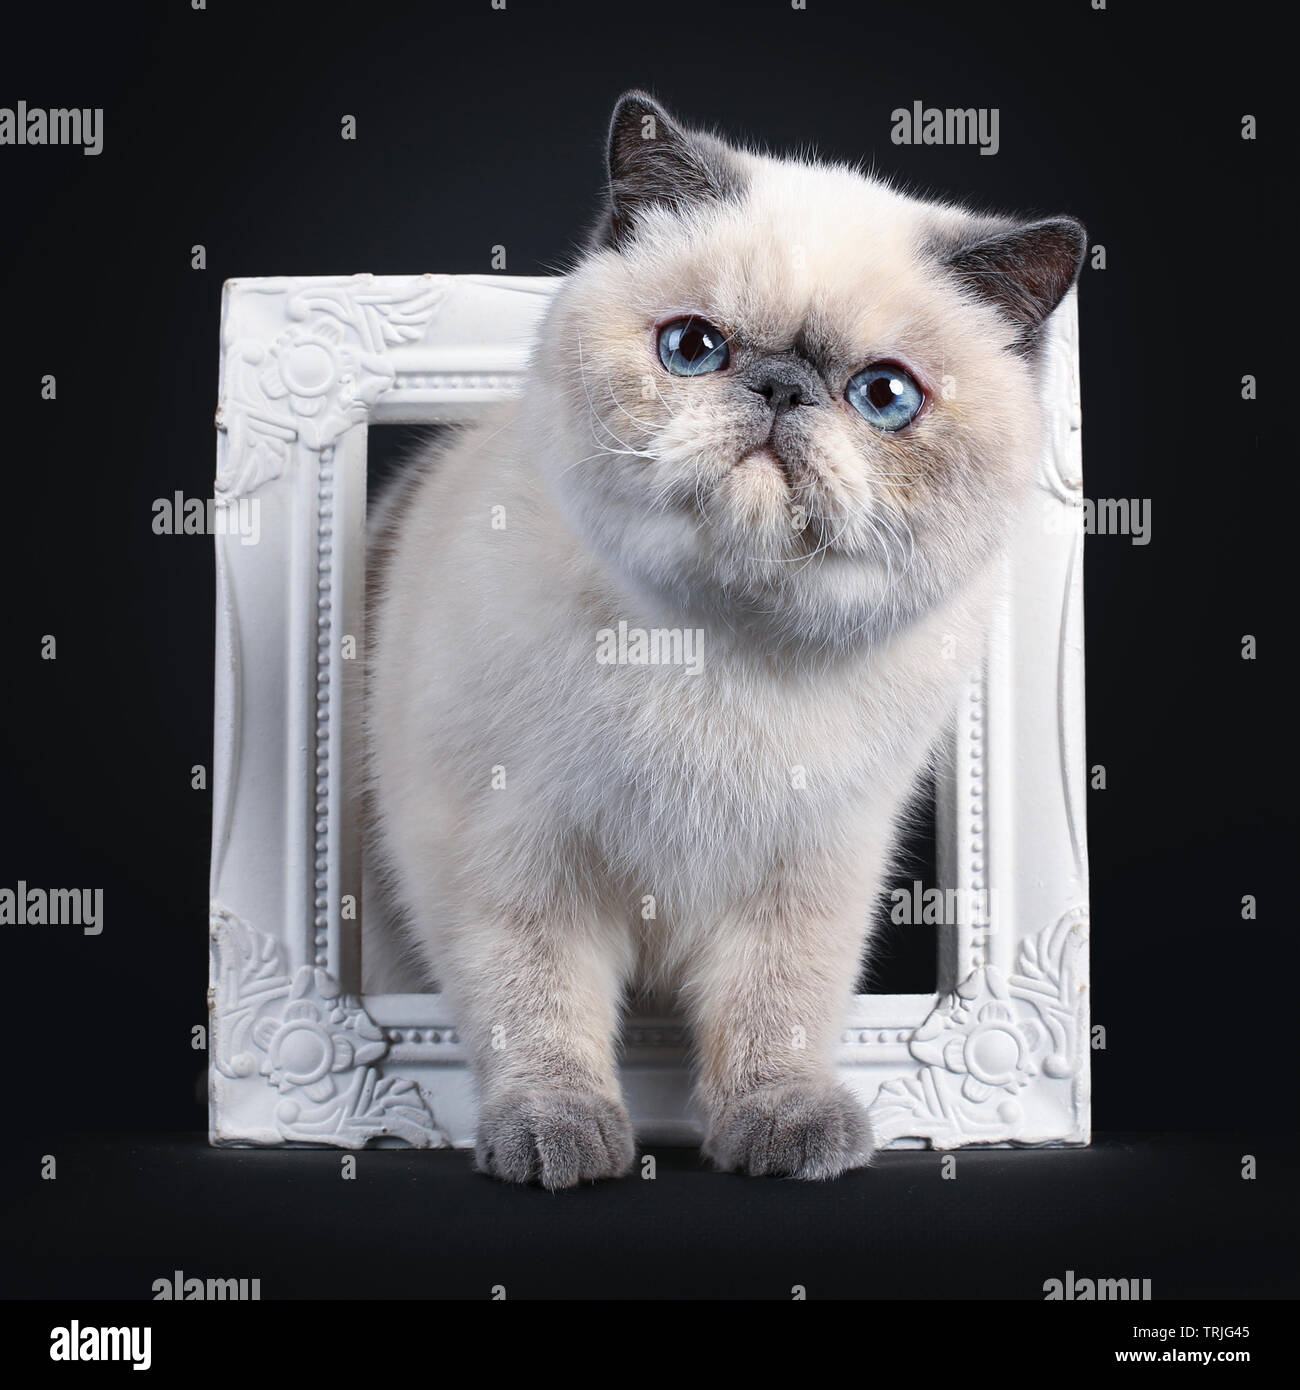 Carino blue tortie point Exotic Shorthair kitten, toccando / in piedi attraverso white photo frame. Guardando al lato con gli occhi blu. Isolato su ba nero Foto Stock